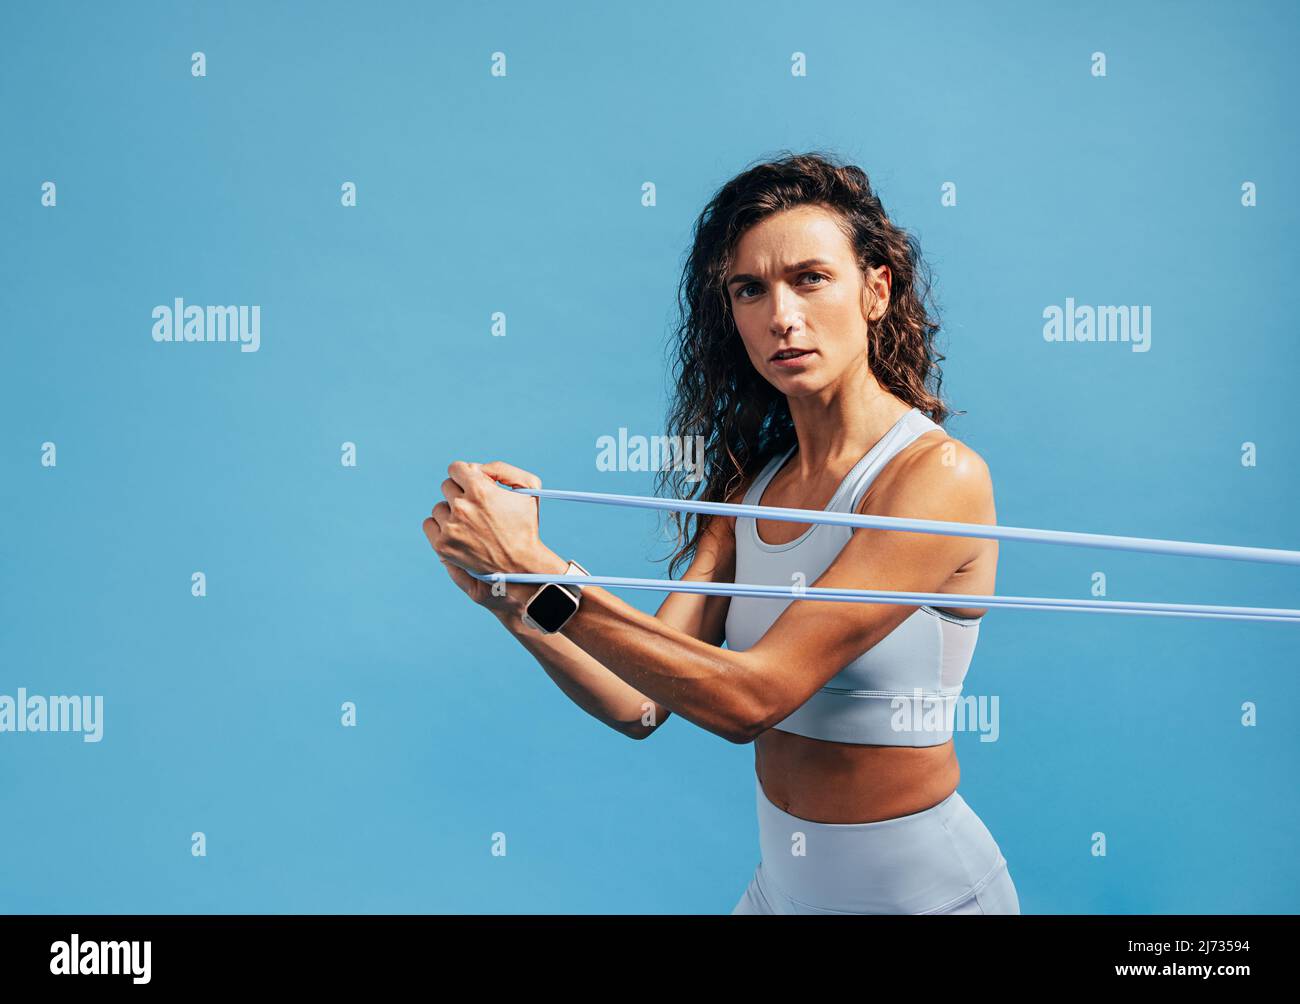 Porträt des jungen Fitness-weiblichen Trainings mit Widerstandsband auf blauem Hintergrund Stockfoto